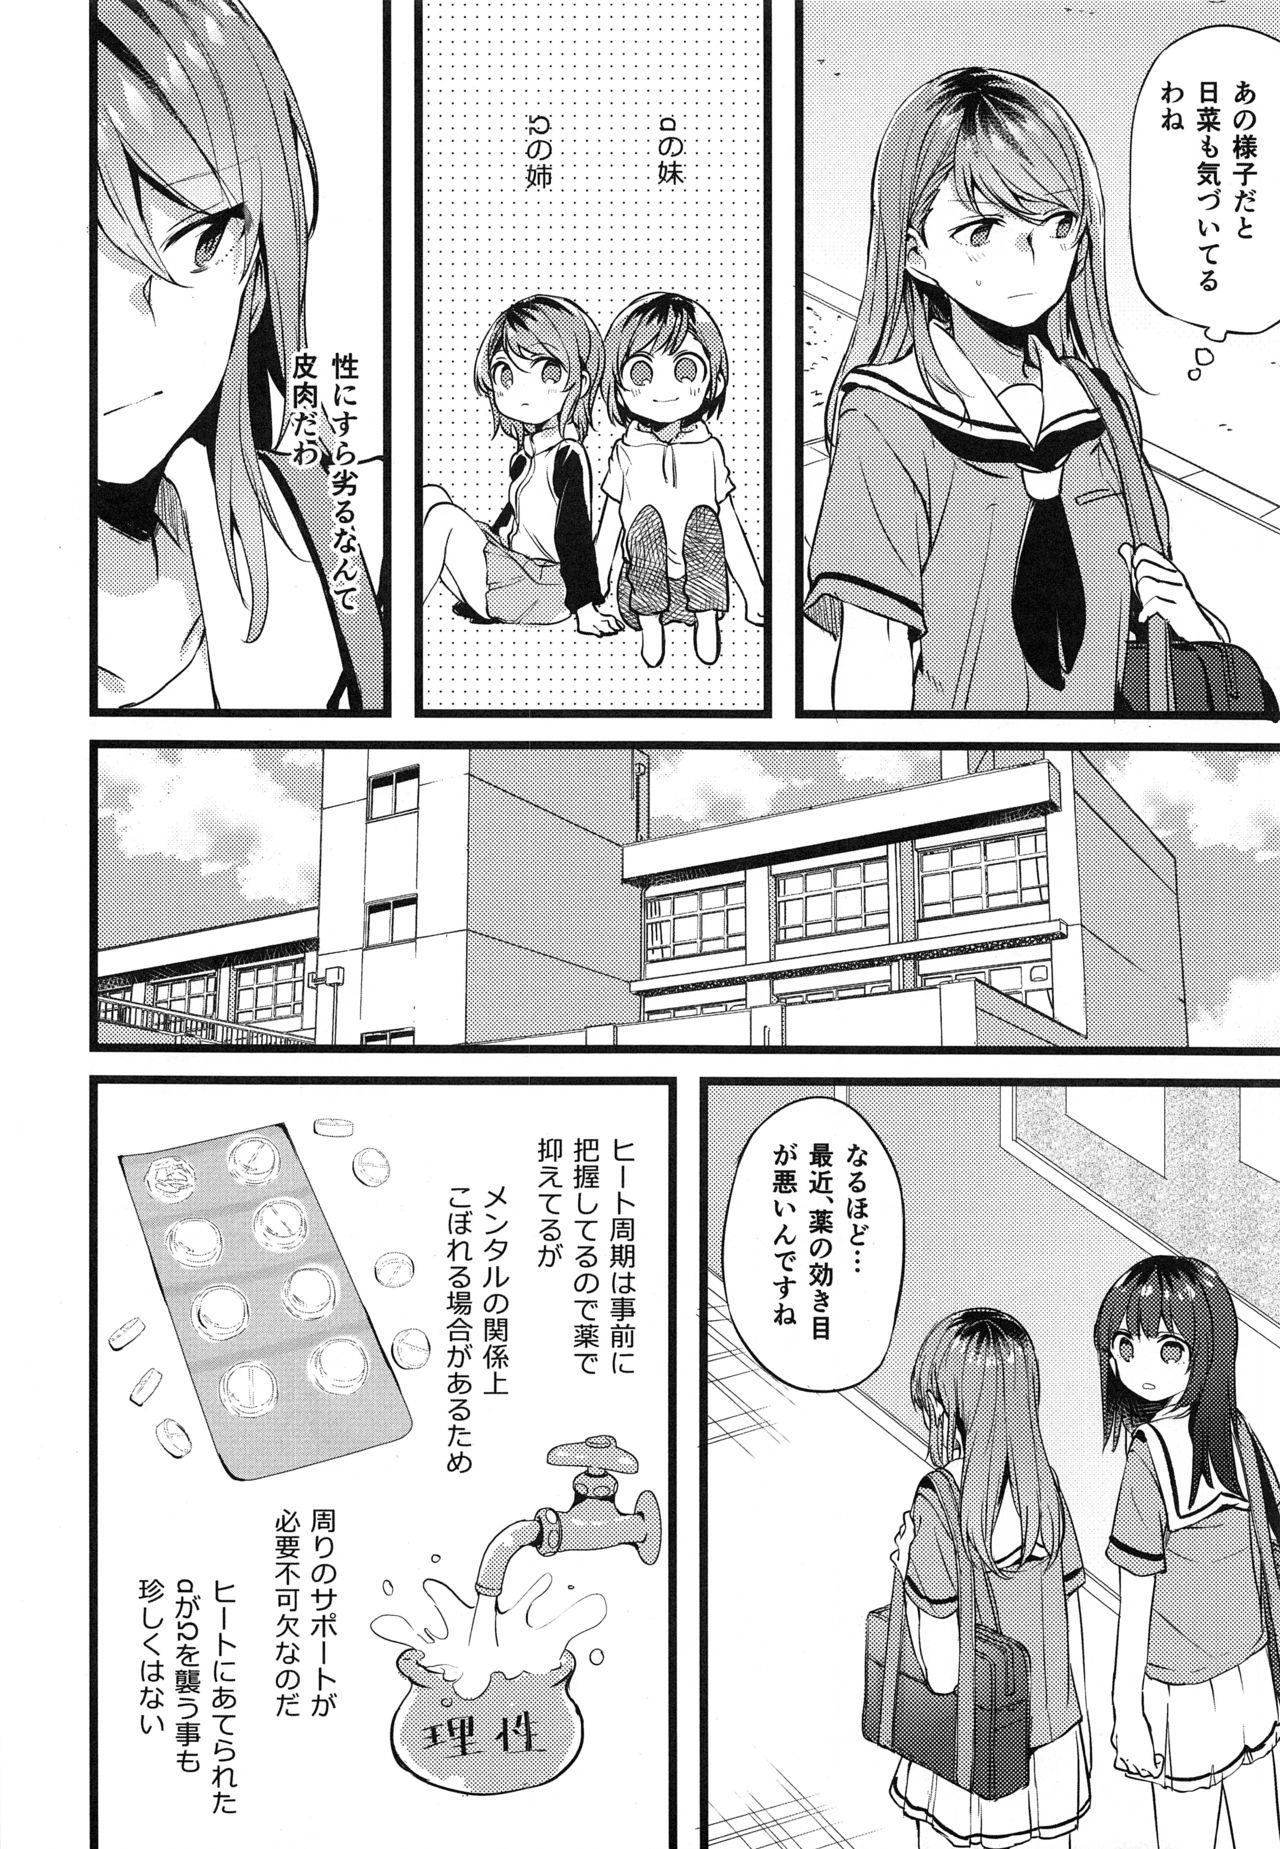 Pounding Kimi no Koi wa Watashi no Koi - Bang dream Spa - Page 7